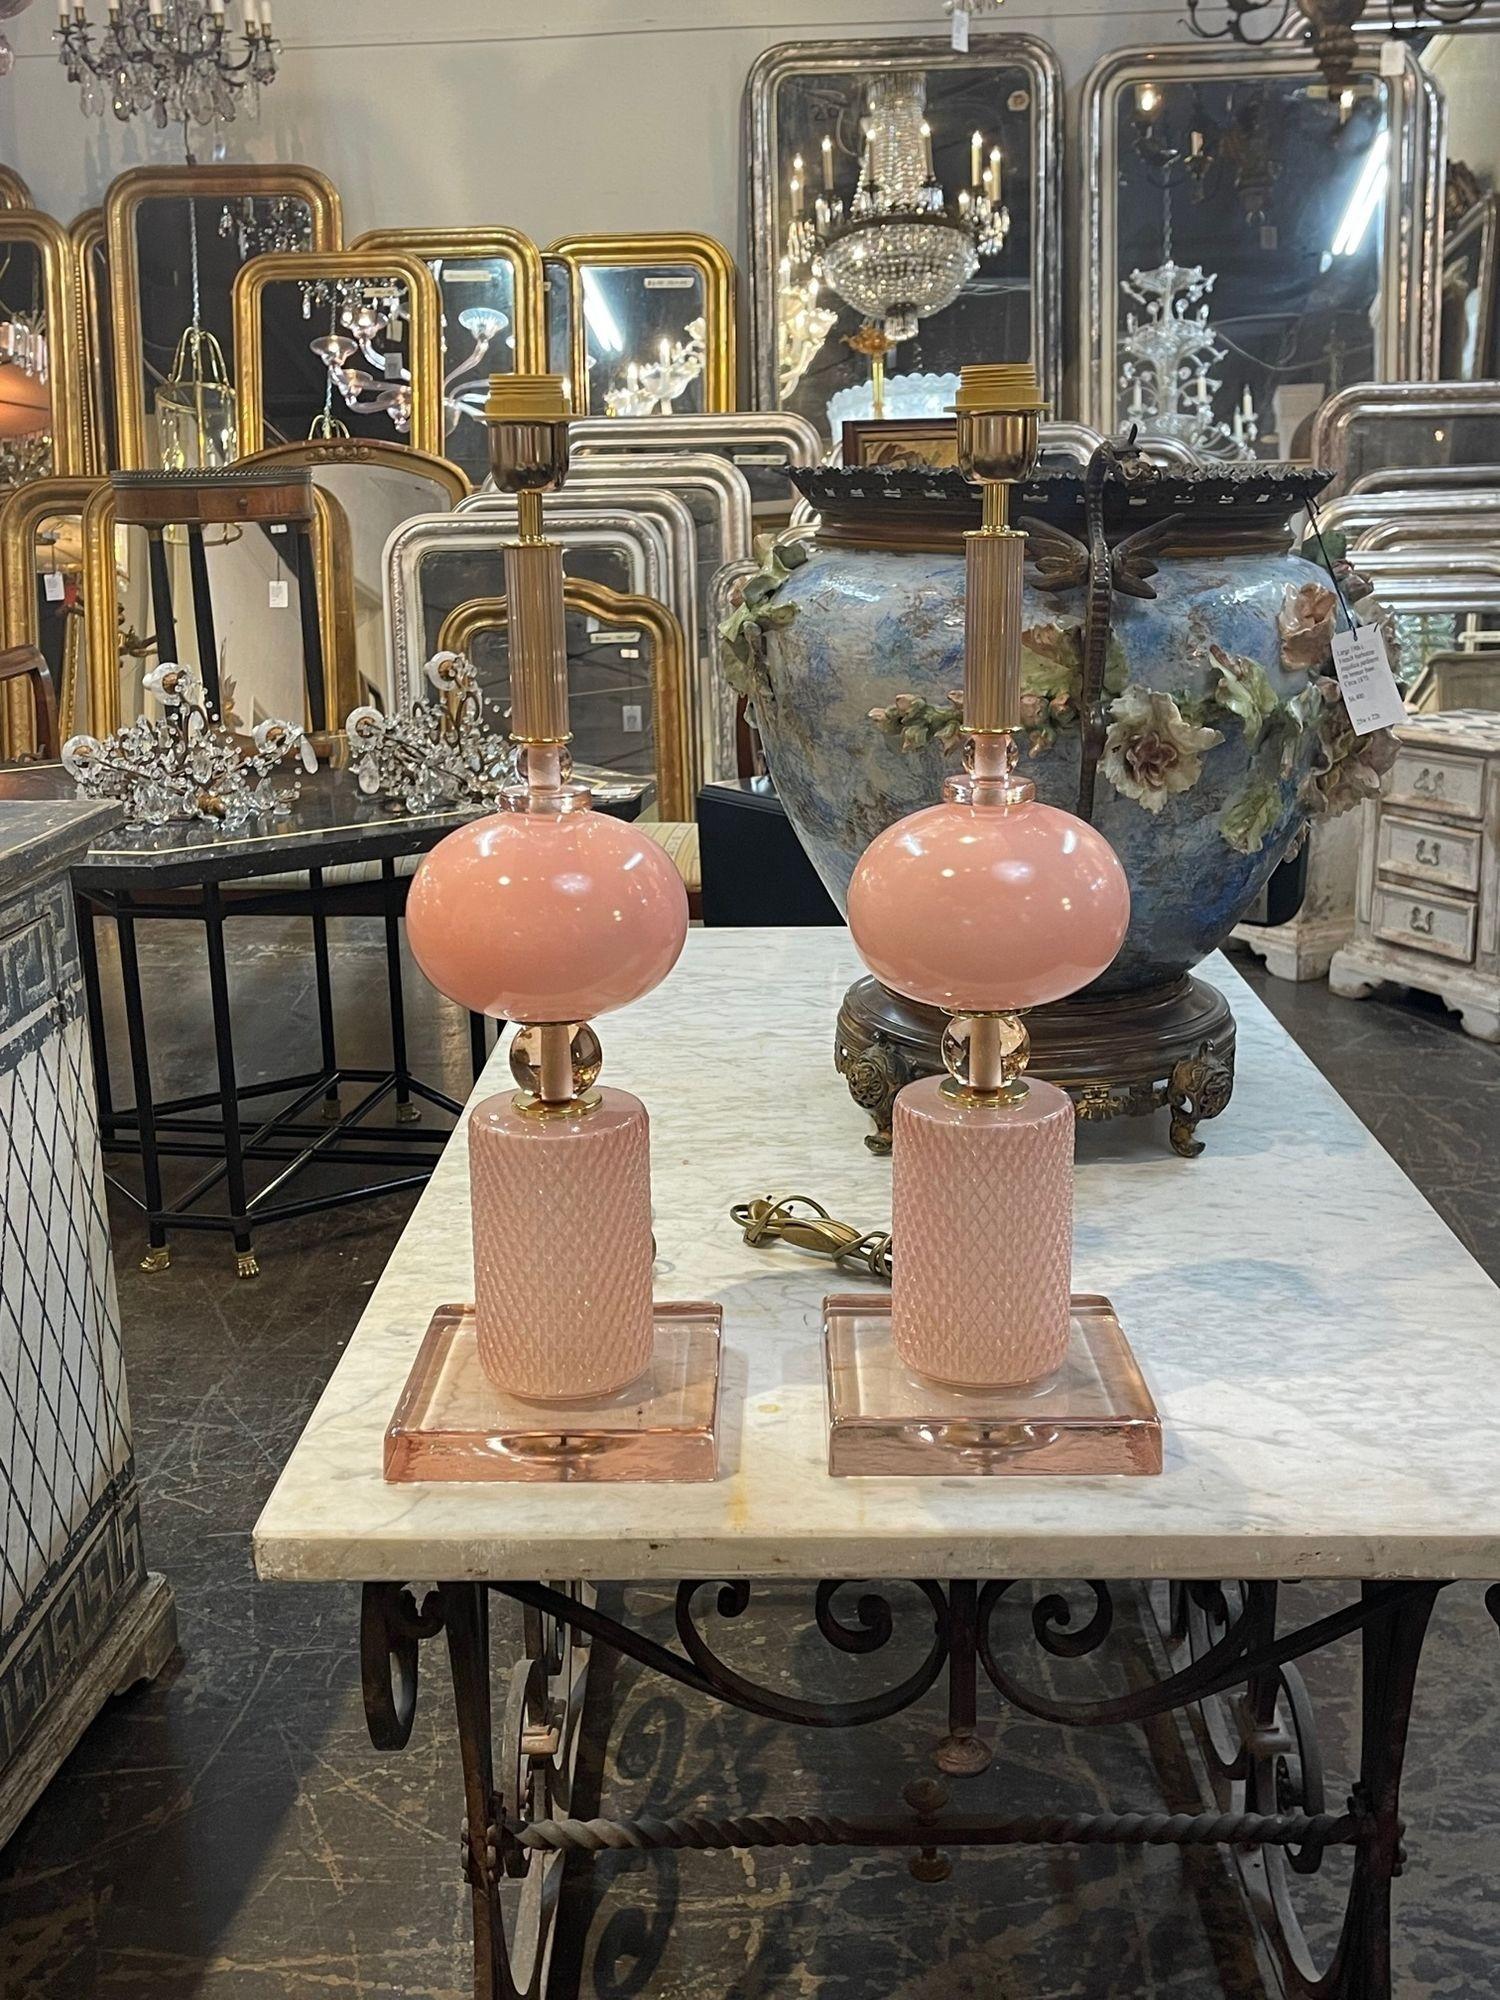 Sehr schönes Paar moderner rosa Muranoglaslampen. Ein elegantes Statement für ein schönes Zuhause. Wunderschön!!